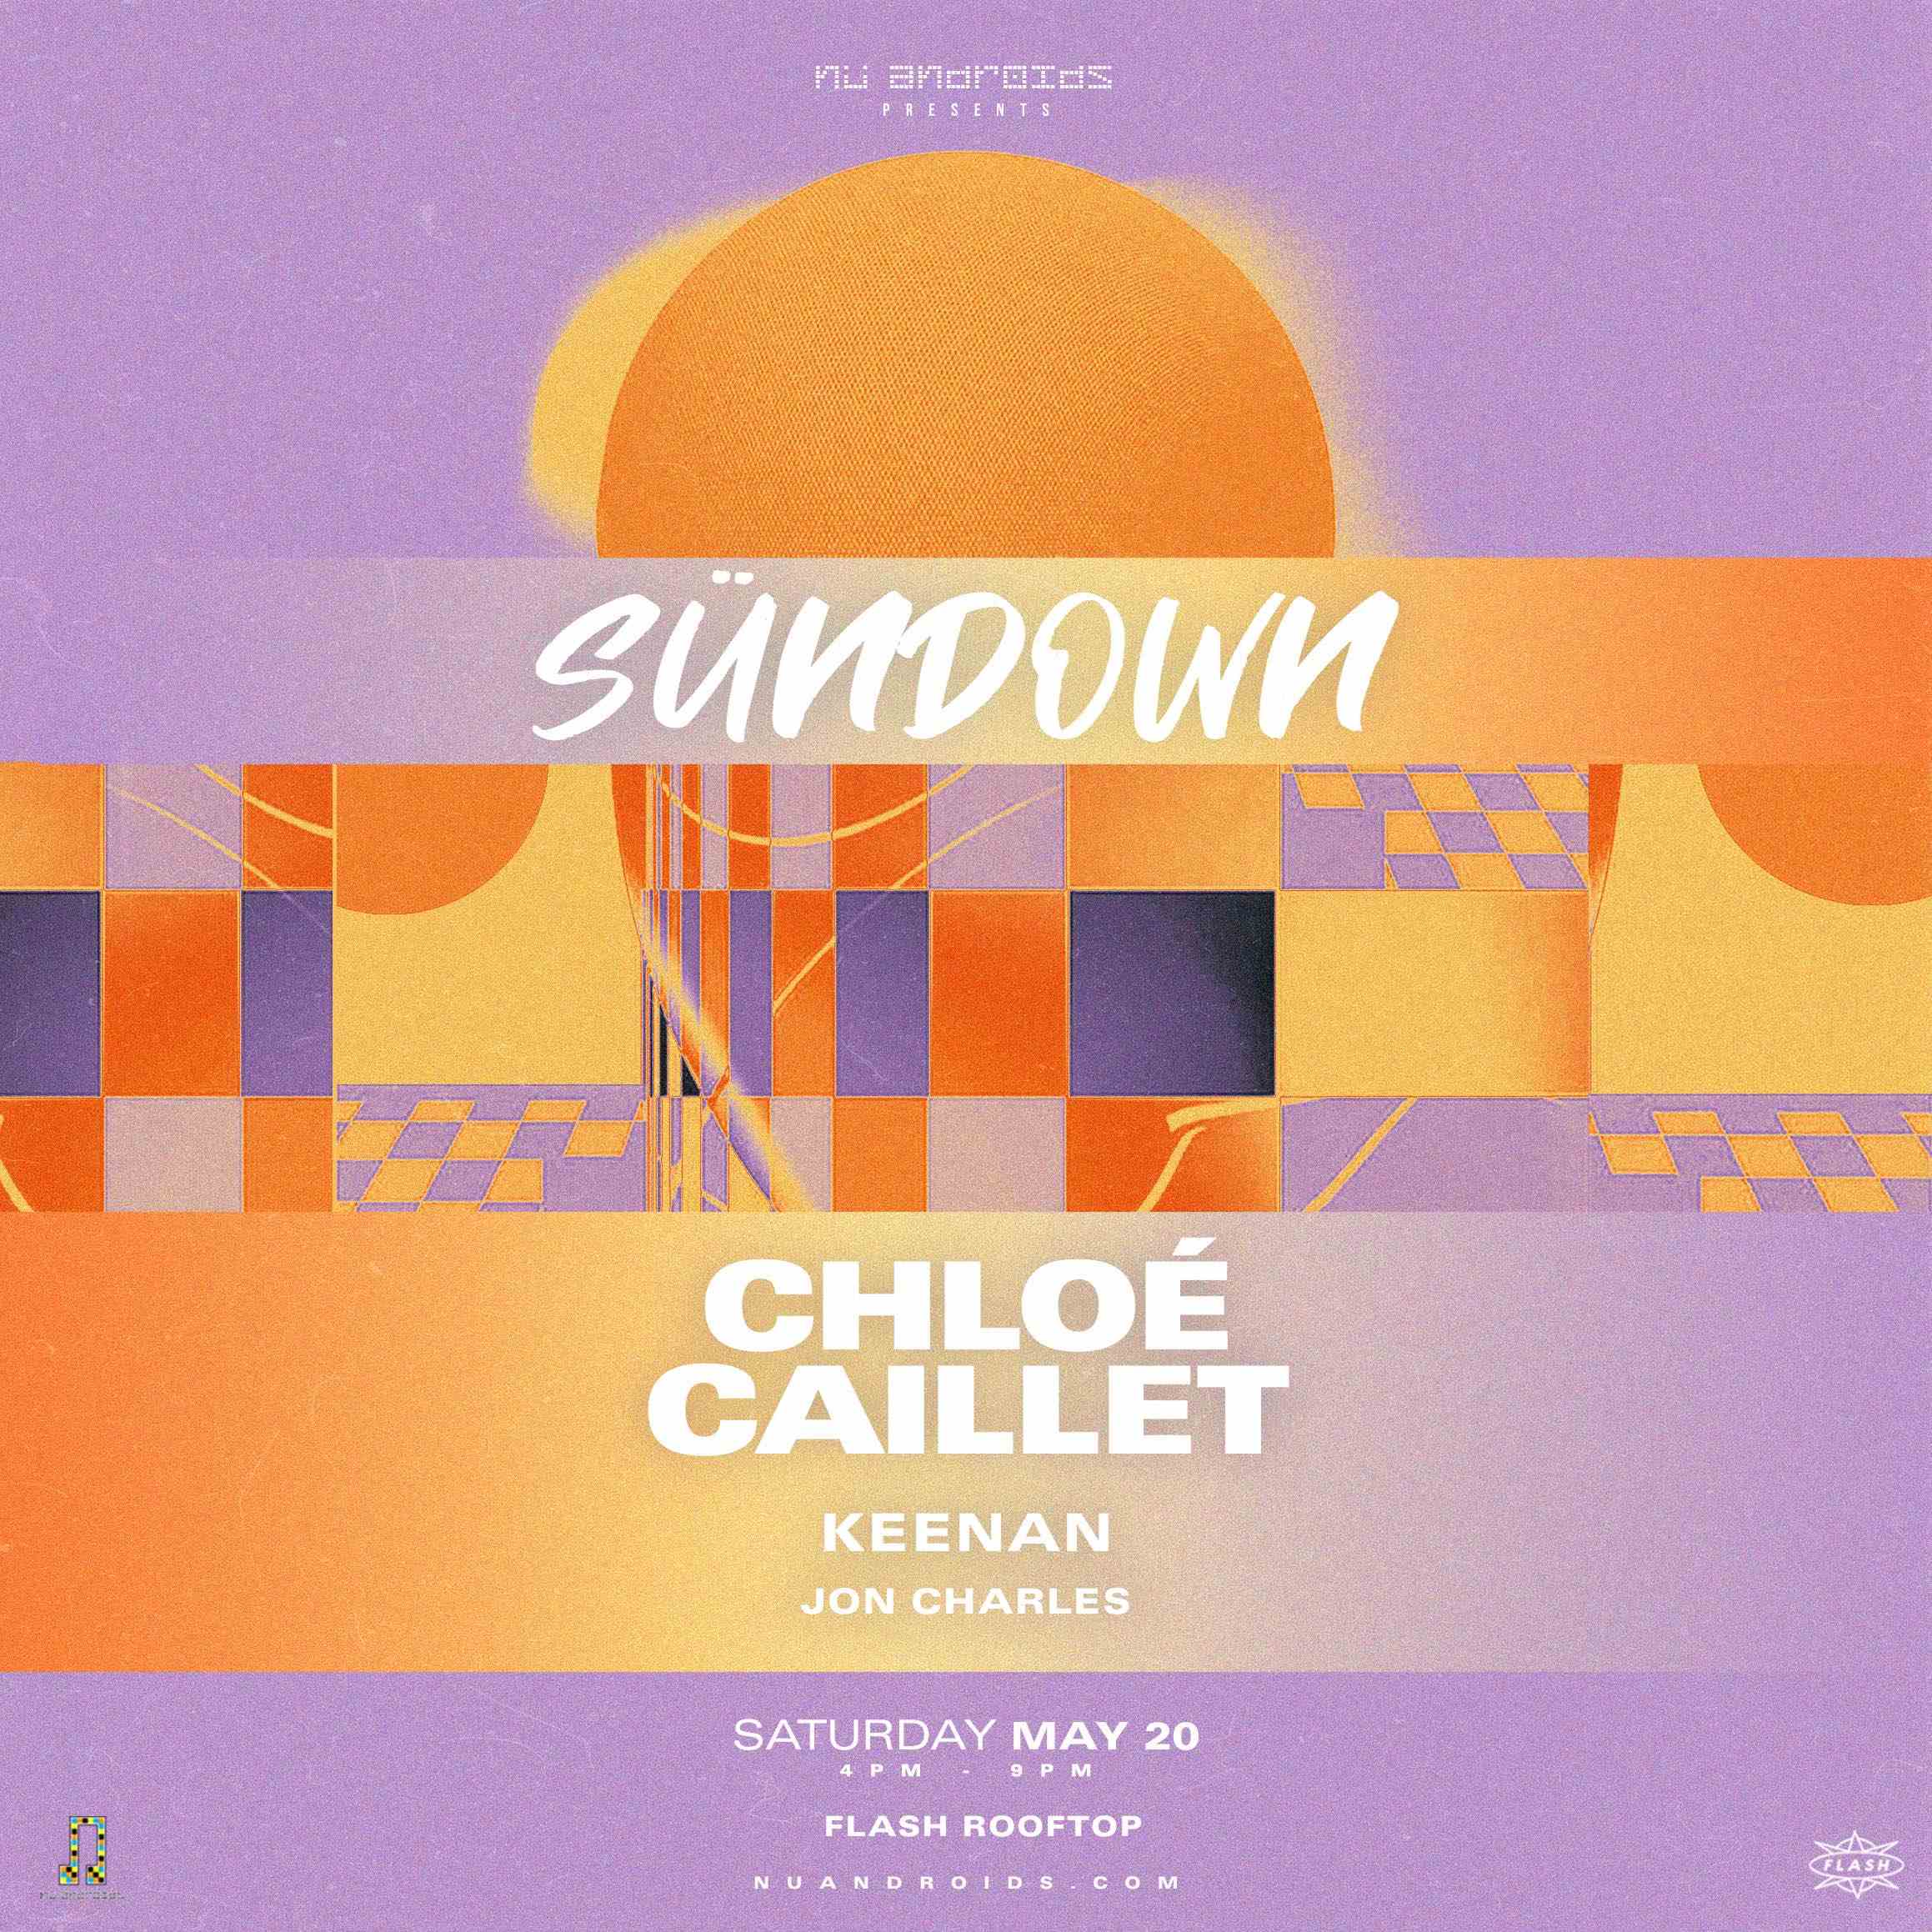 Nü Androids Presents SünDown: Chloé Caillet (21+) event flyer